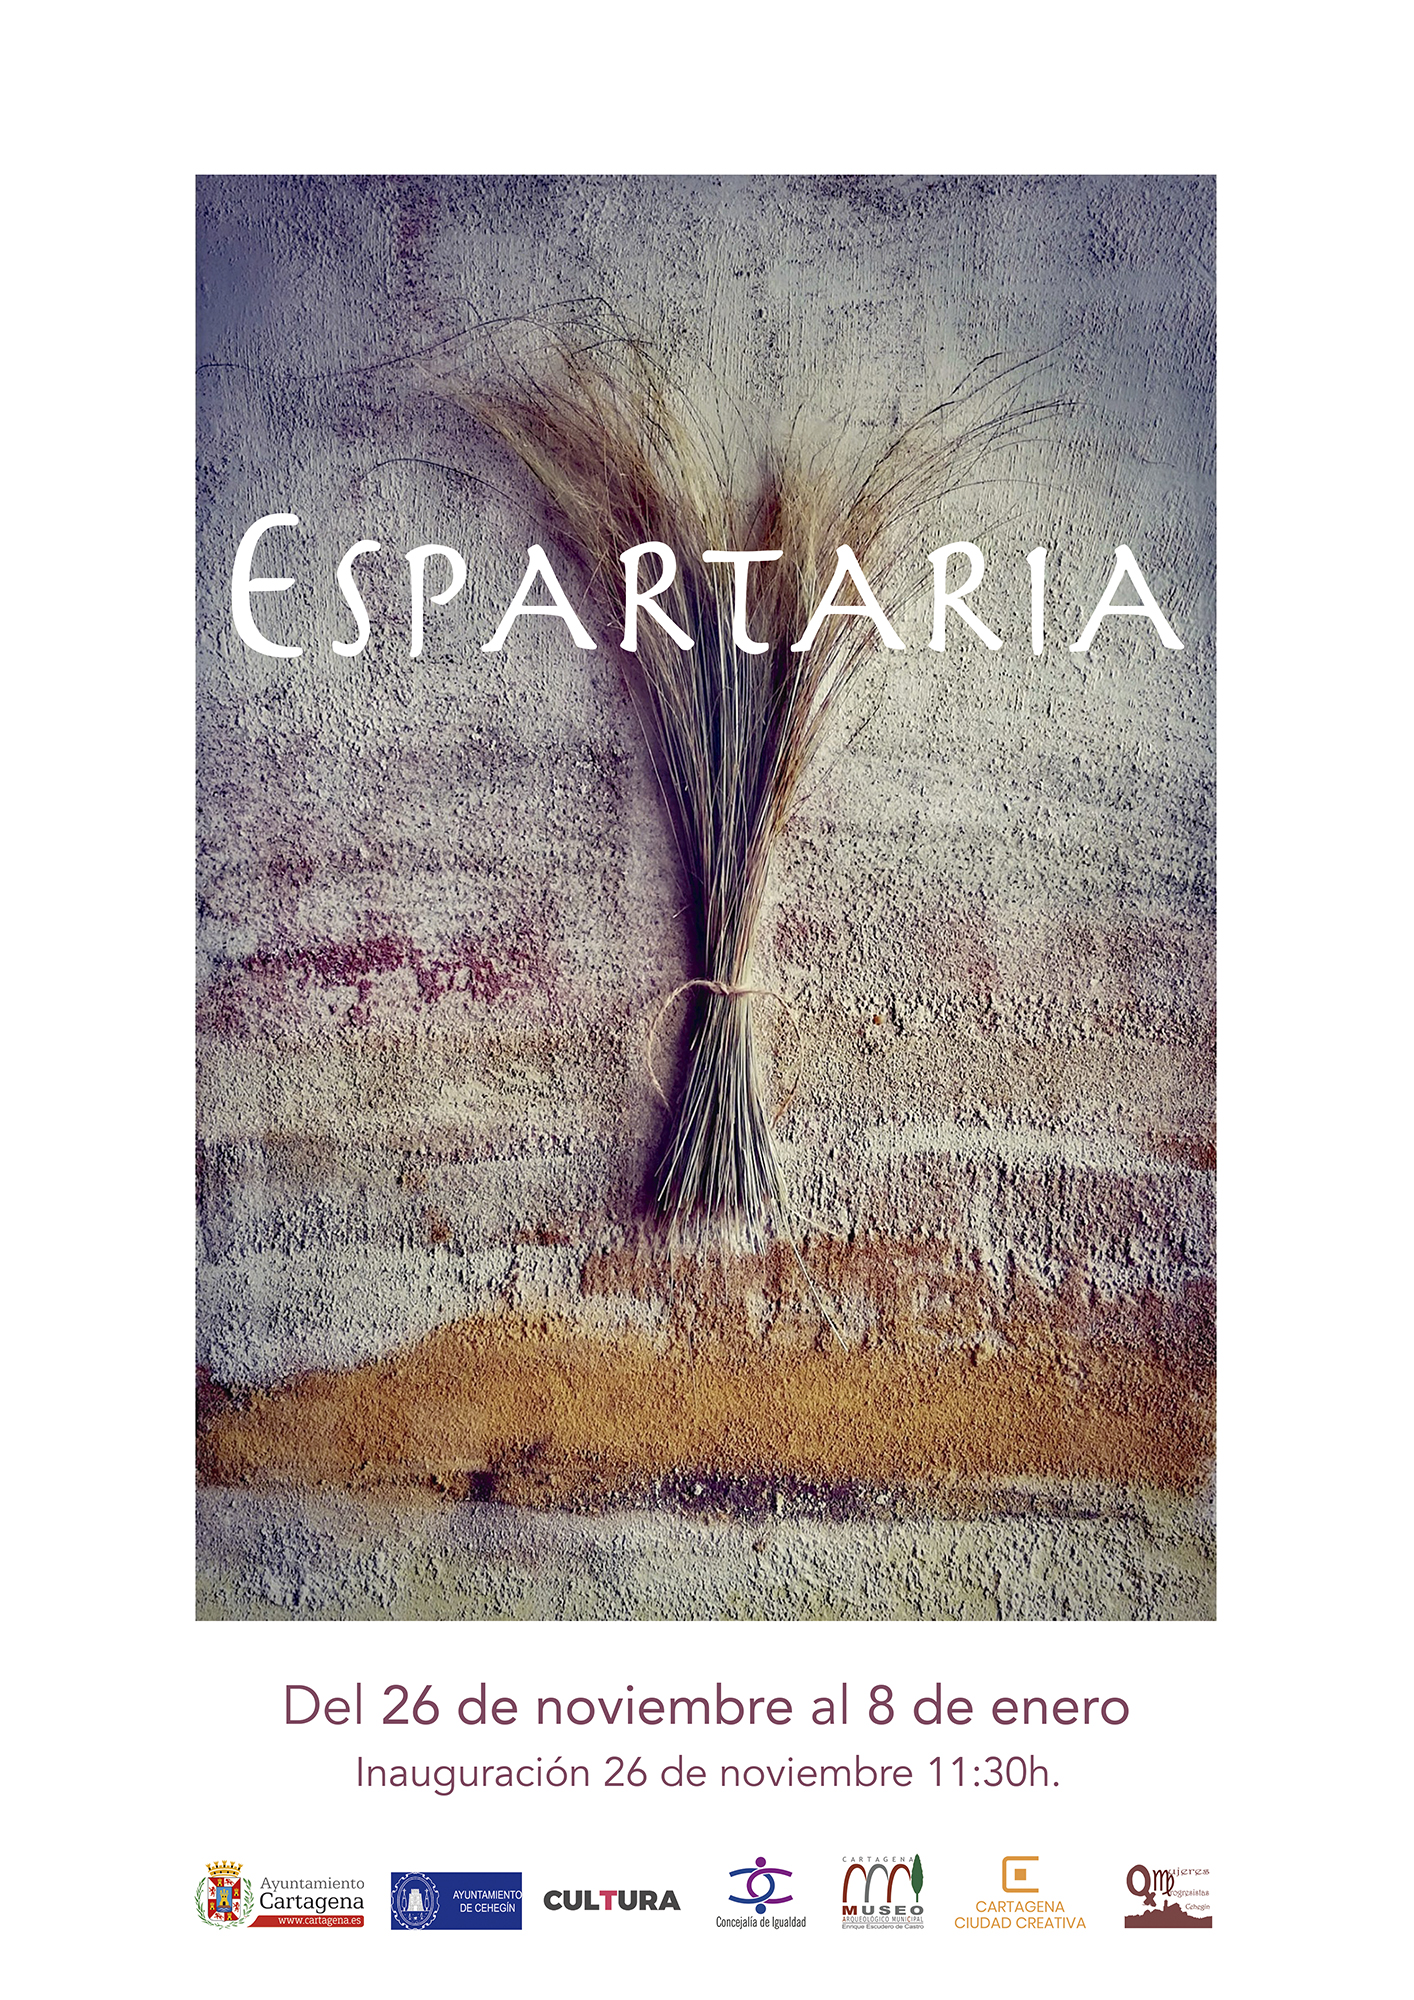 ESPARTARIA: El Esparto, ese cruce de caminos.